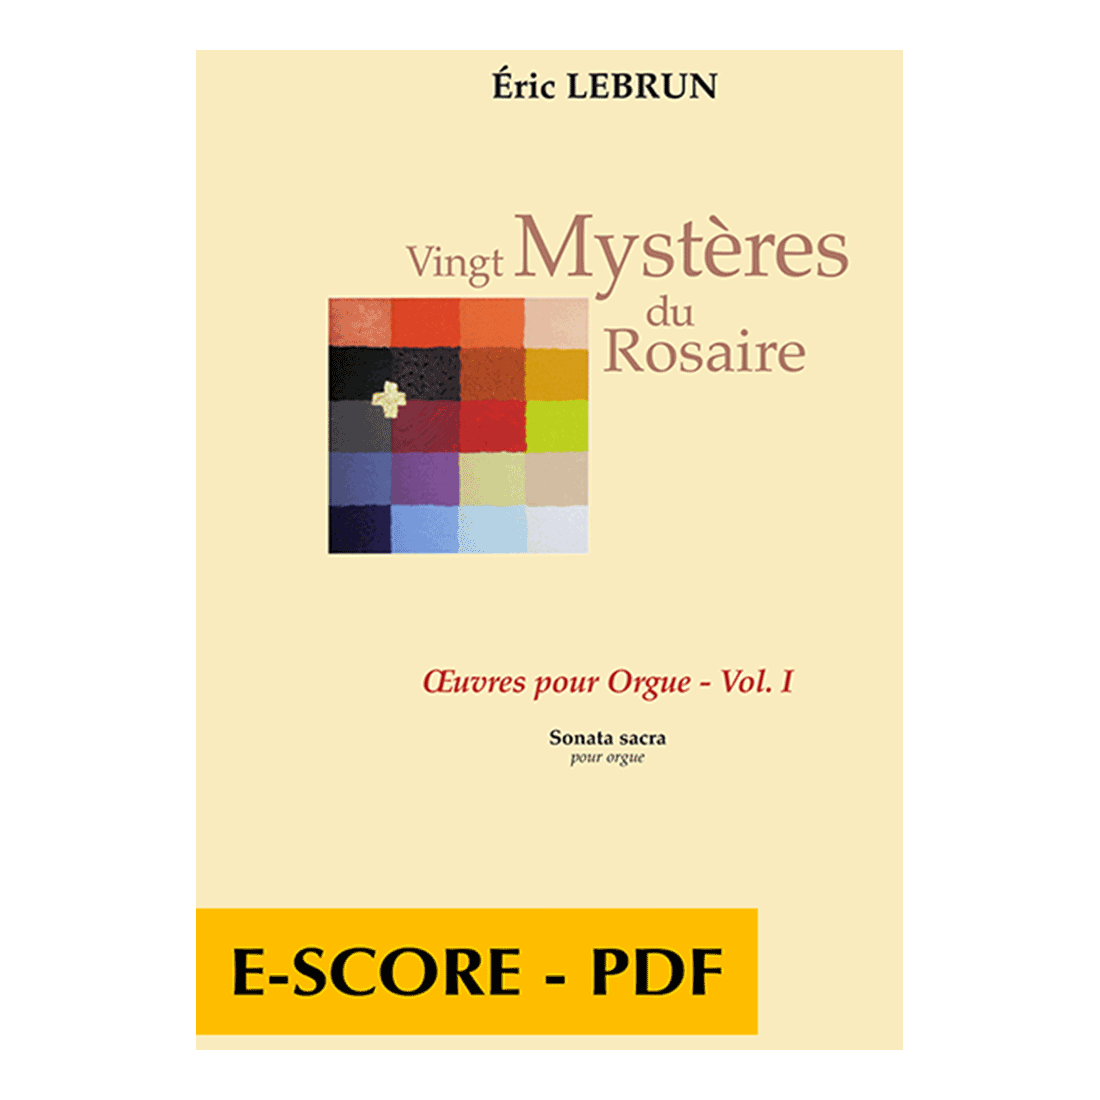 Vingt mystères du Rosaire - oeuvres pour orgue Vol. 1 - E-score PDF